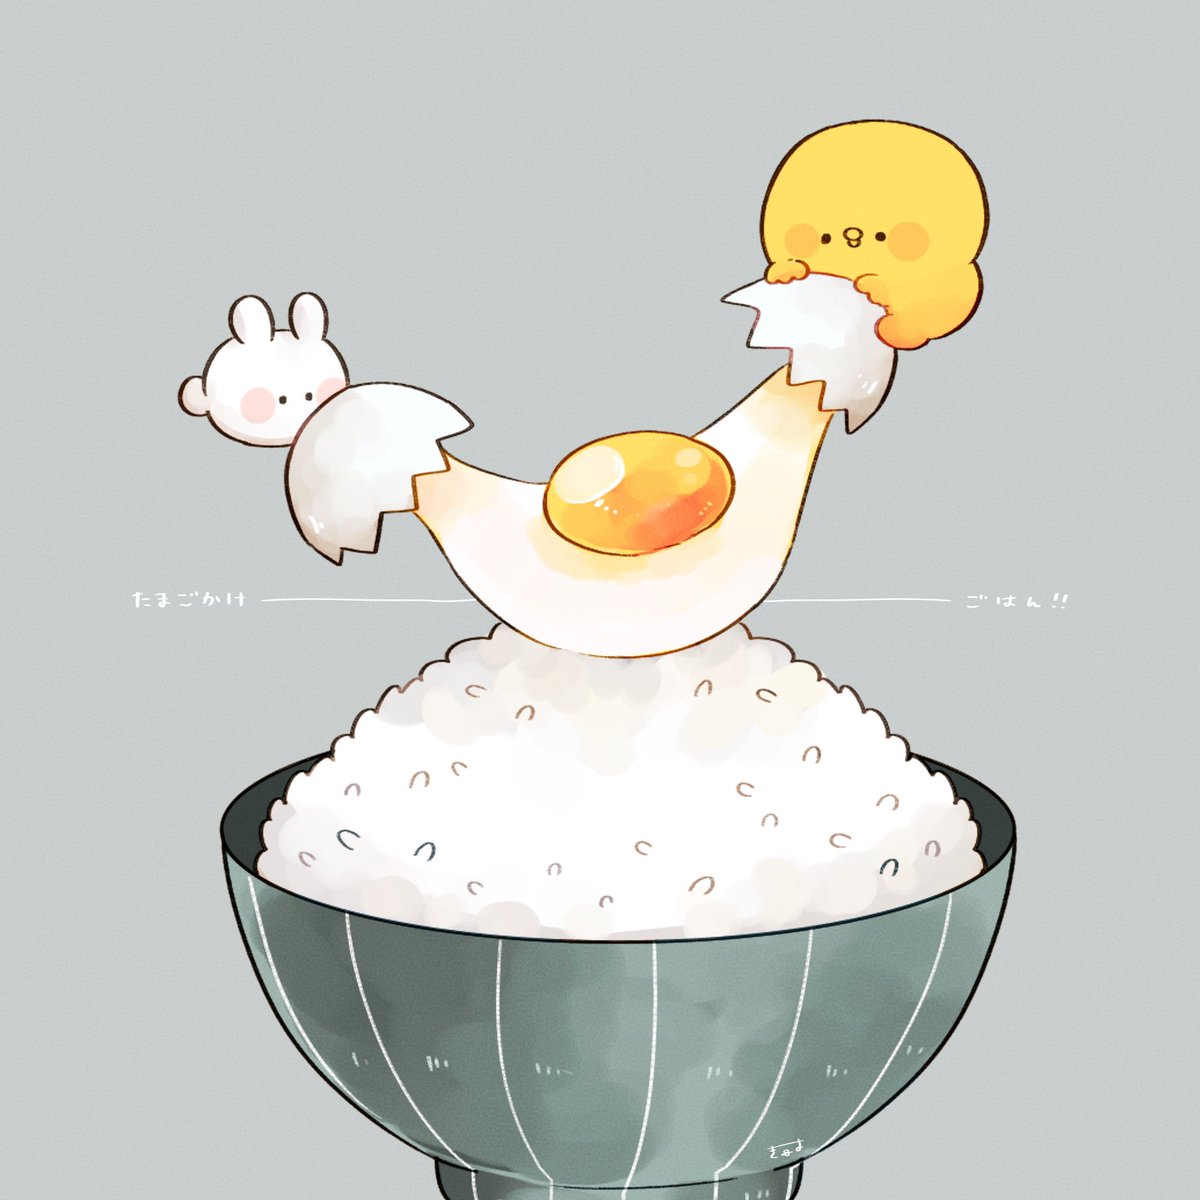 「卵かけご飯 」|てんみやきよのイラスト